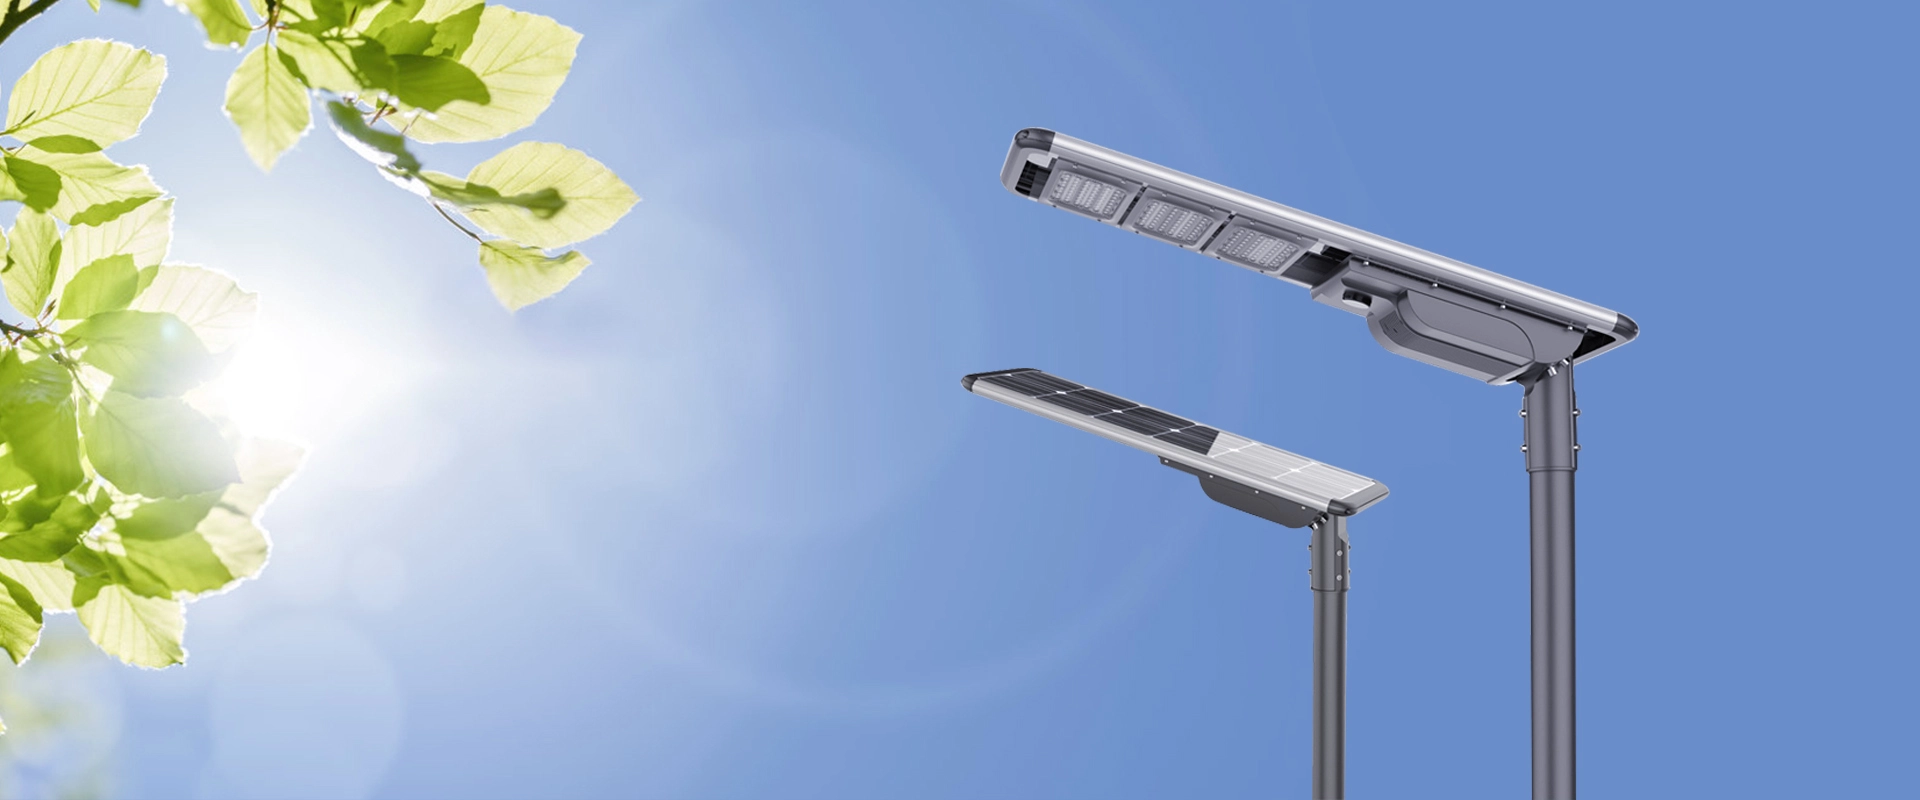 Produk penyimpanan energi dan lampu jalan LED Surya